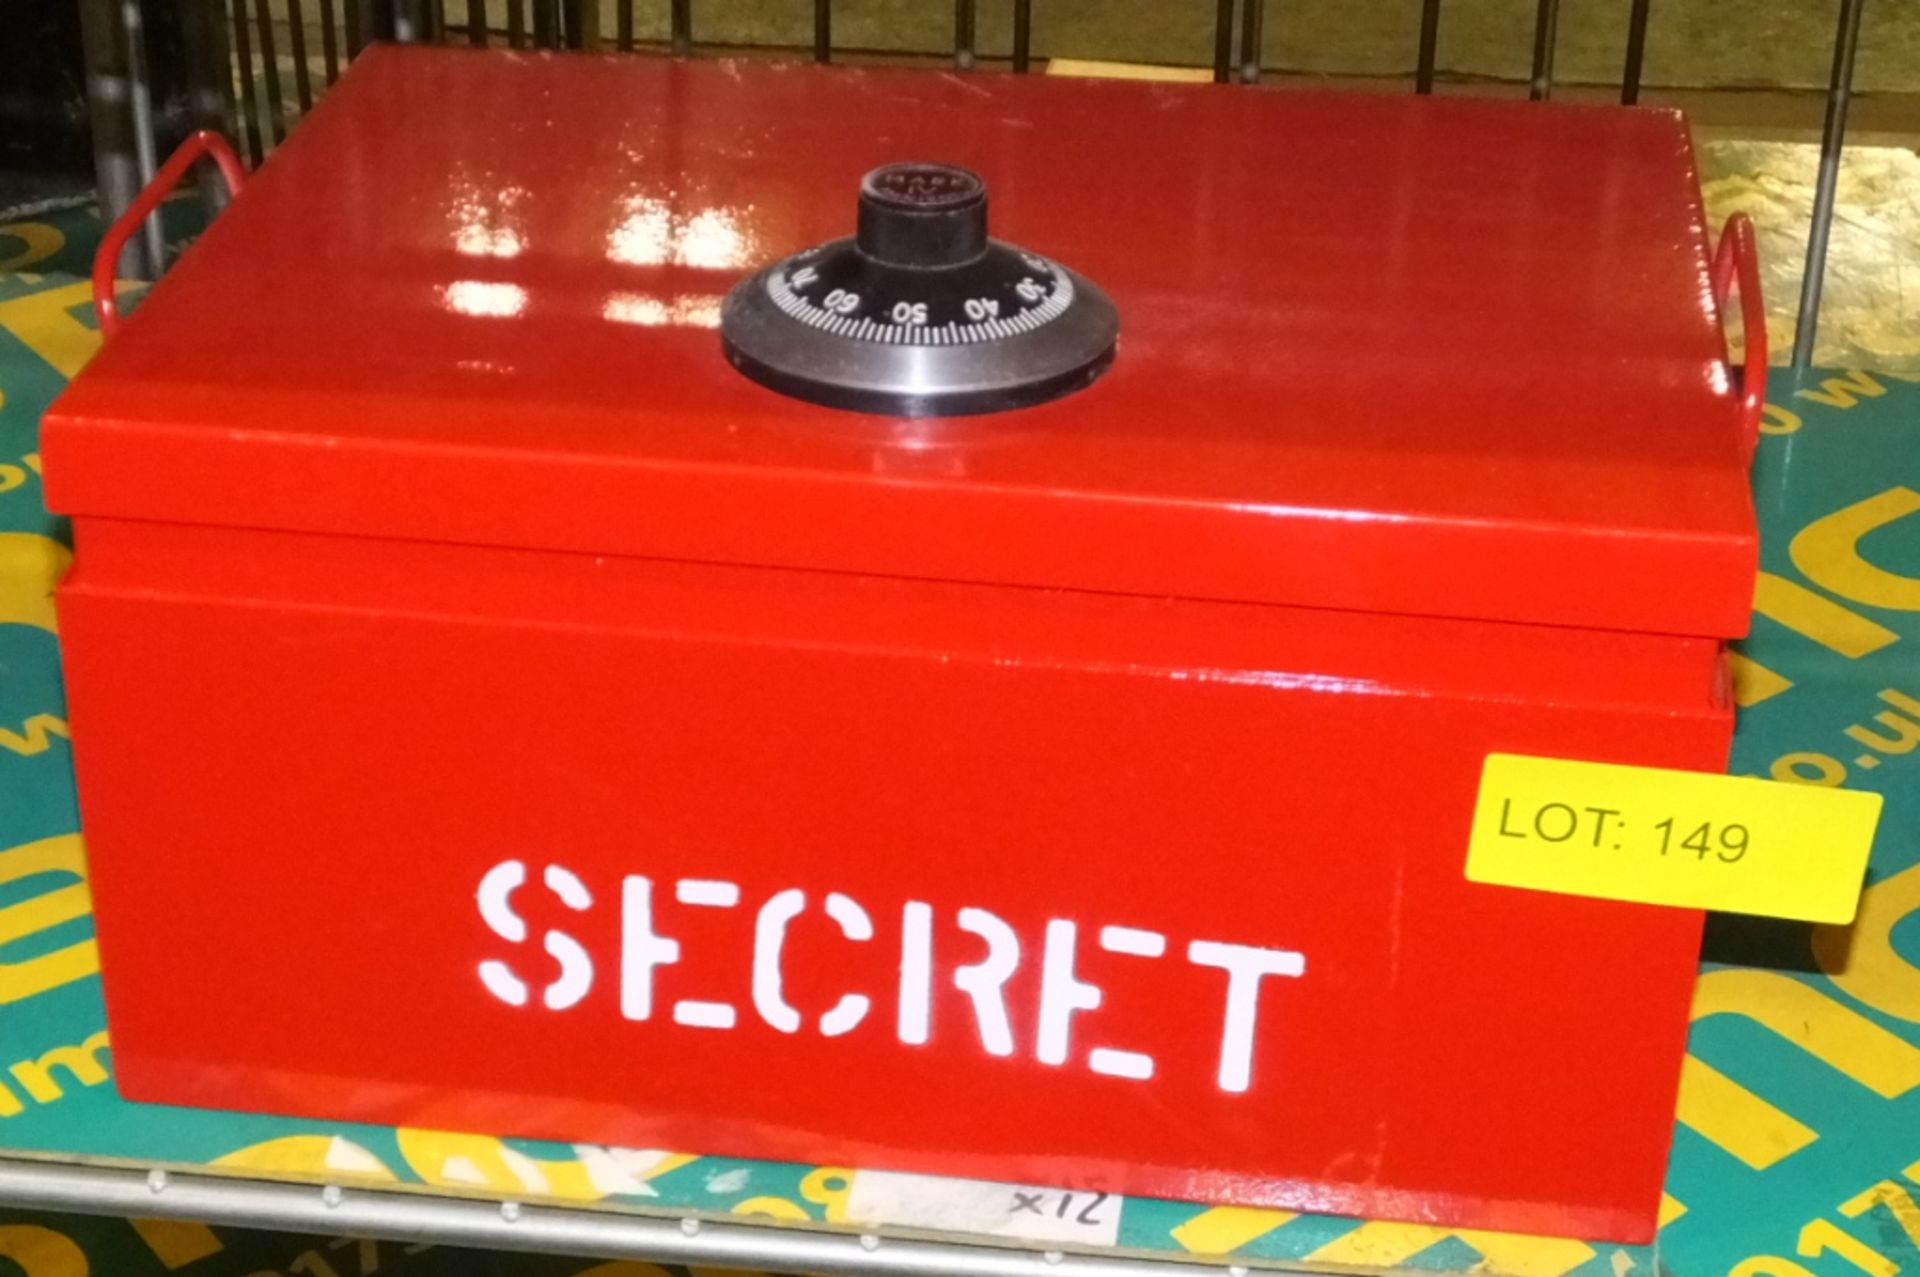 Lockable box - combination in box "Secret"